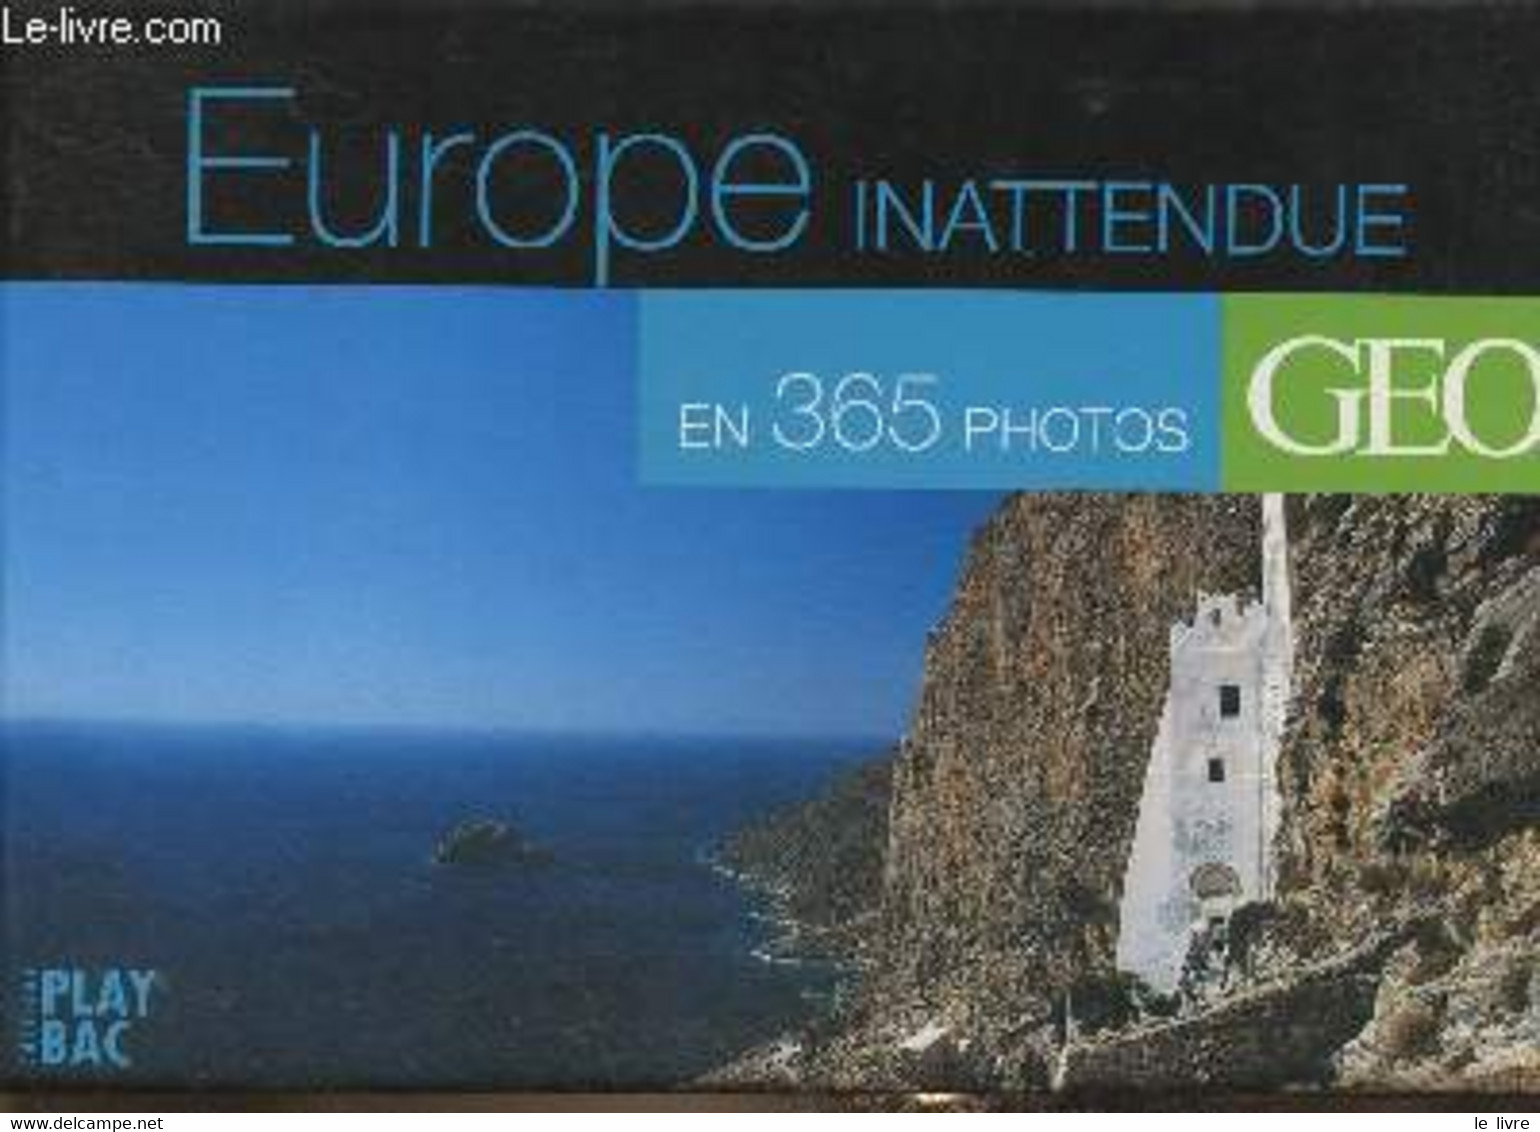 Europe Inattendue En 365 Photos - Collectif - 2007 - Agendas & Calendarios